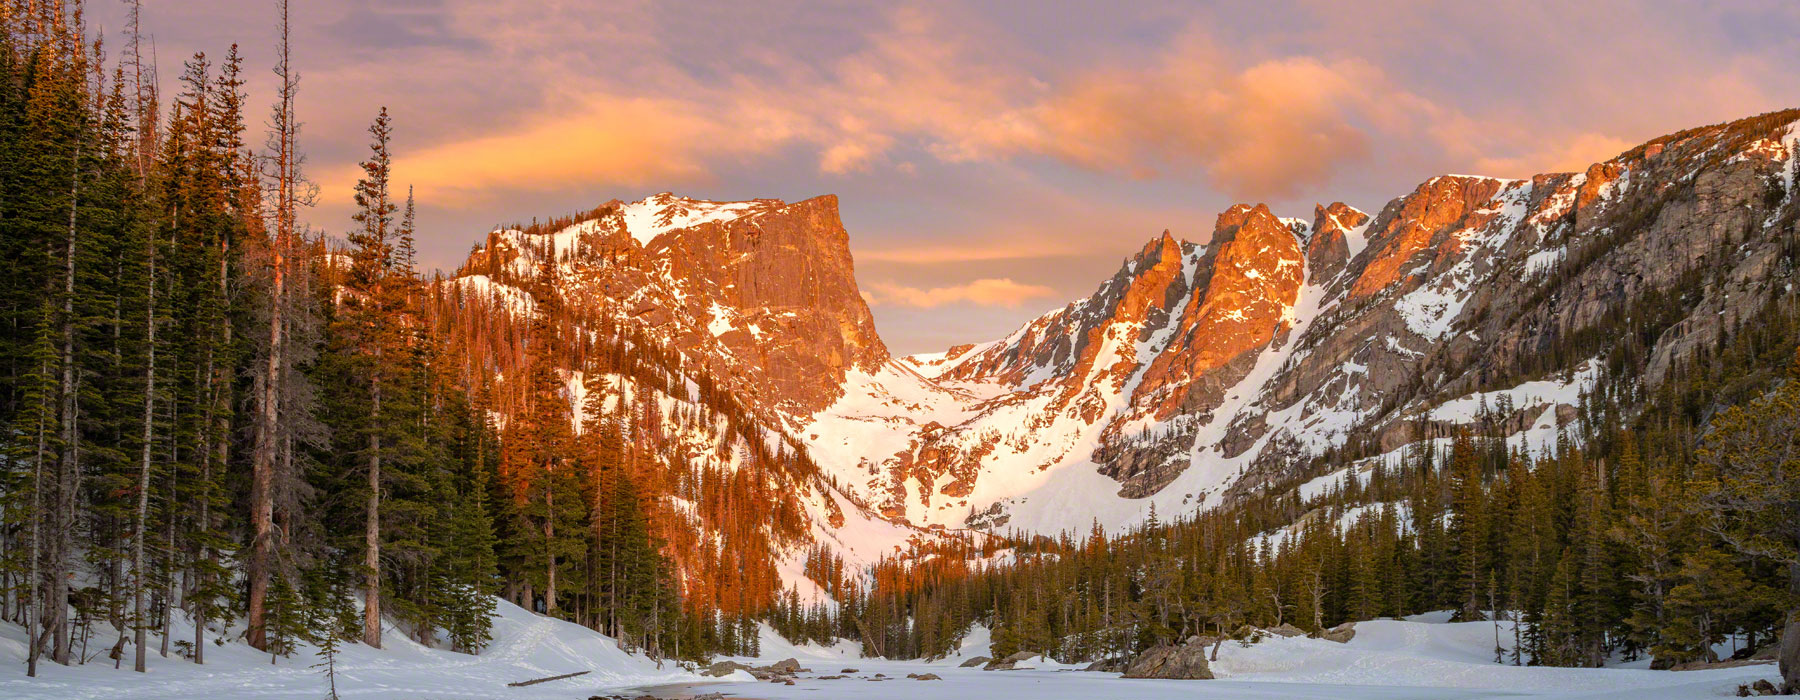 Rocky Mountain National Park 100 Anniversary Photos & History